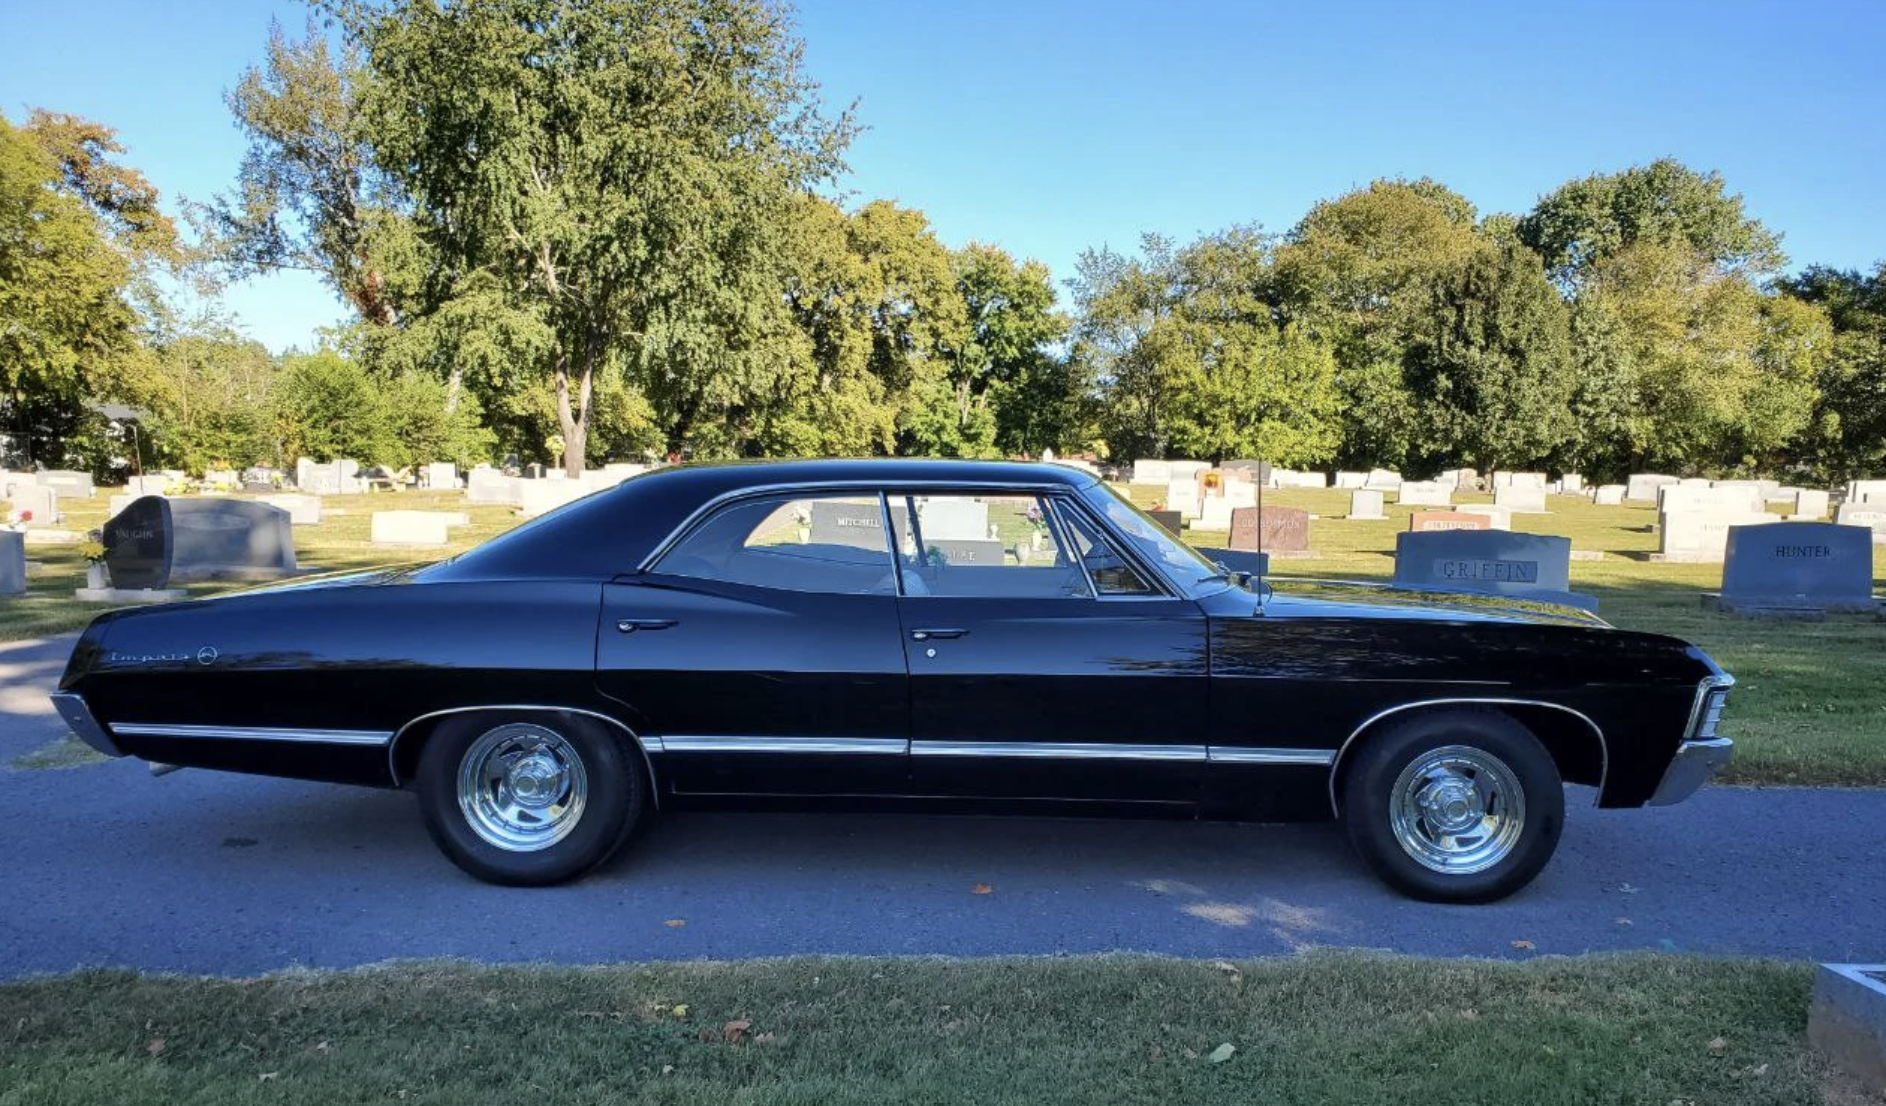 Chevy Impala 67 - Supernatural.